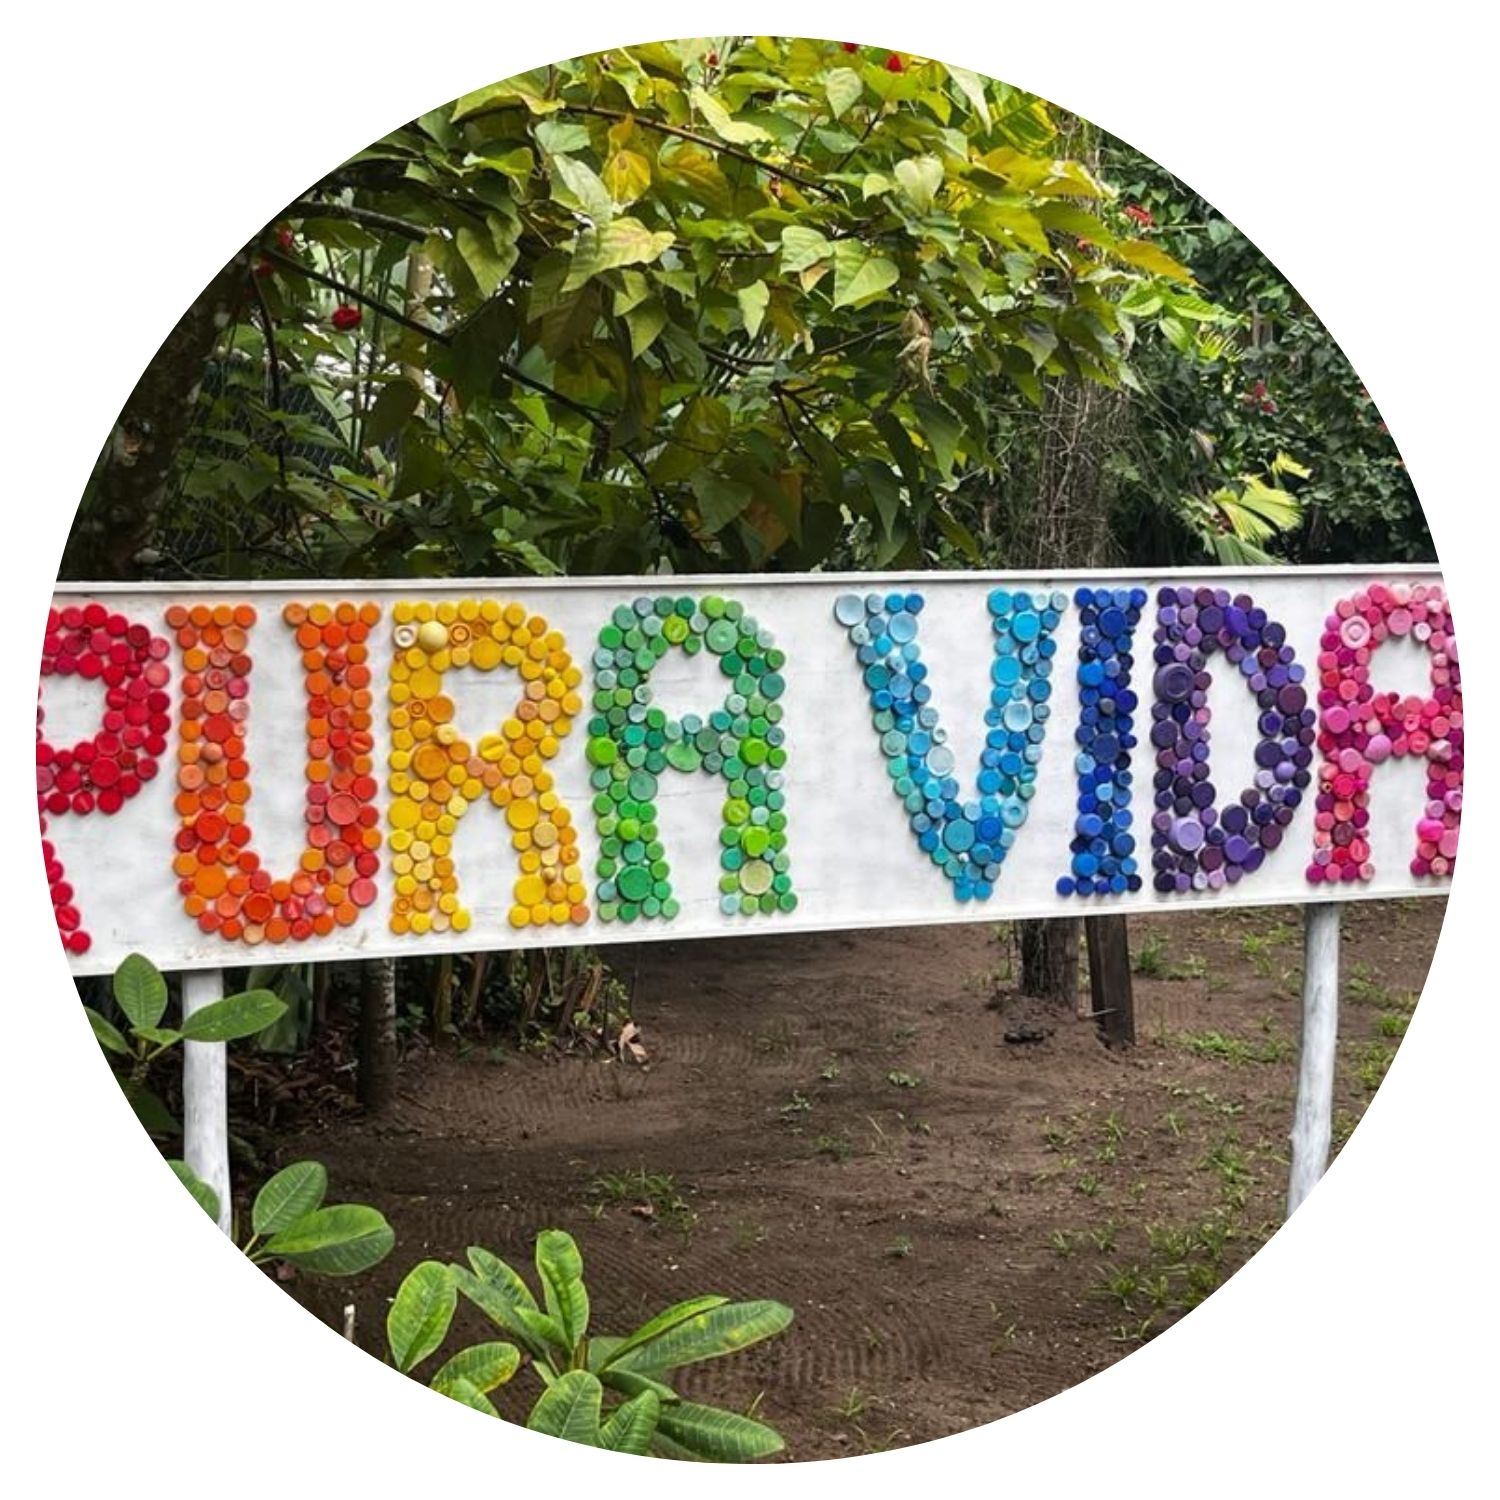 Une pancarte colorée en mosaïque portant l'inscription "PURA VIDA", symbole emblématique du Costa Rica, avec des couleurs vives et un design attrayant.